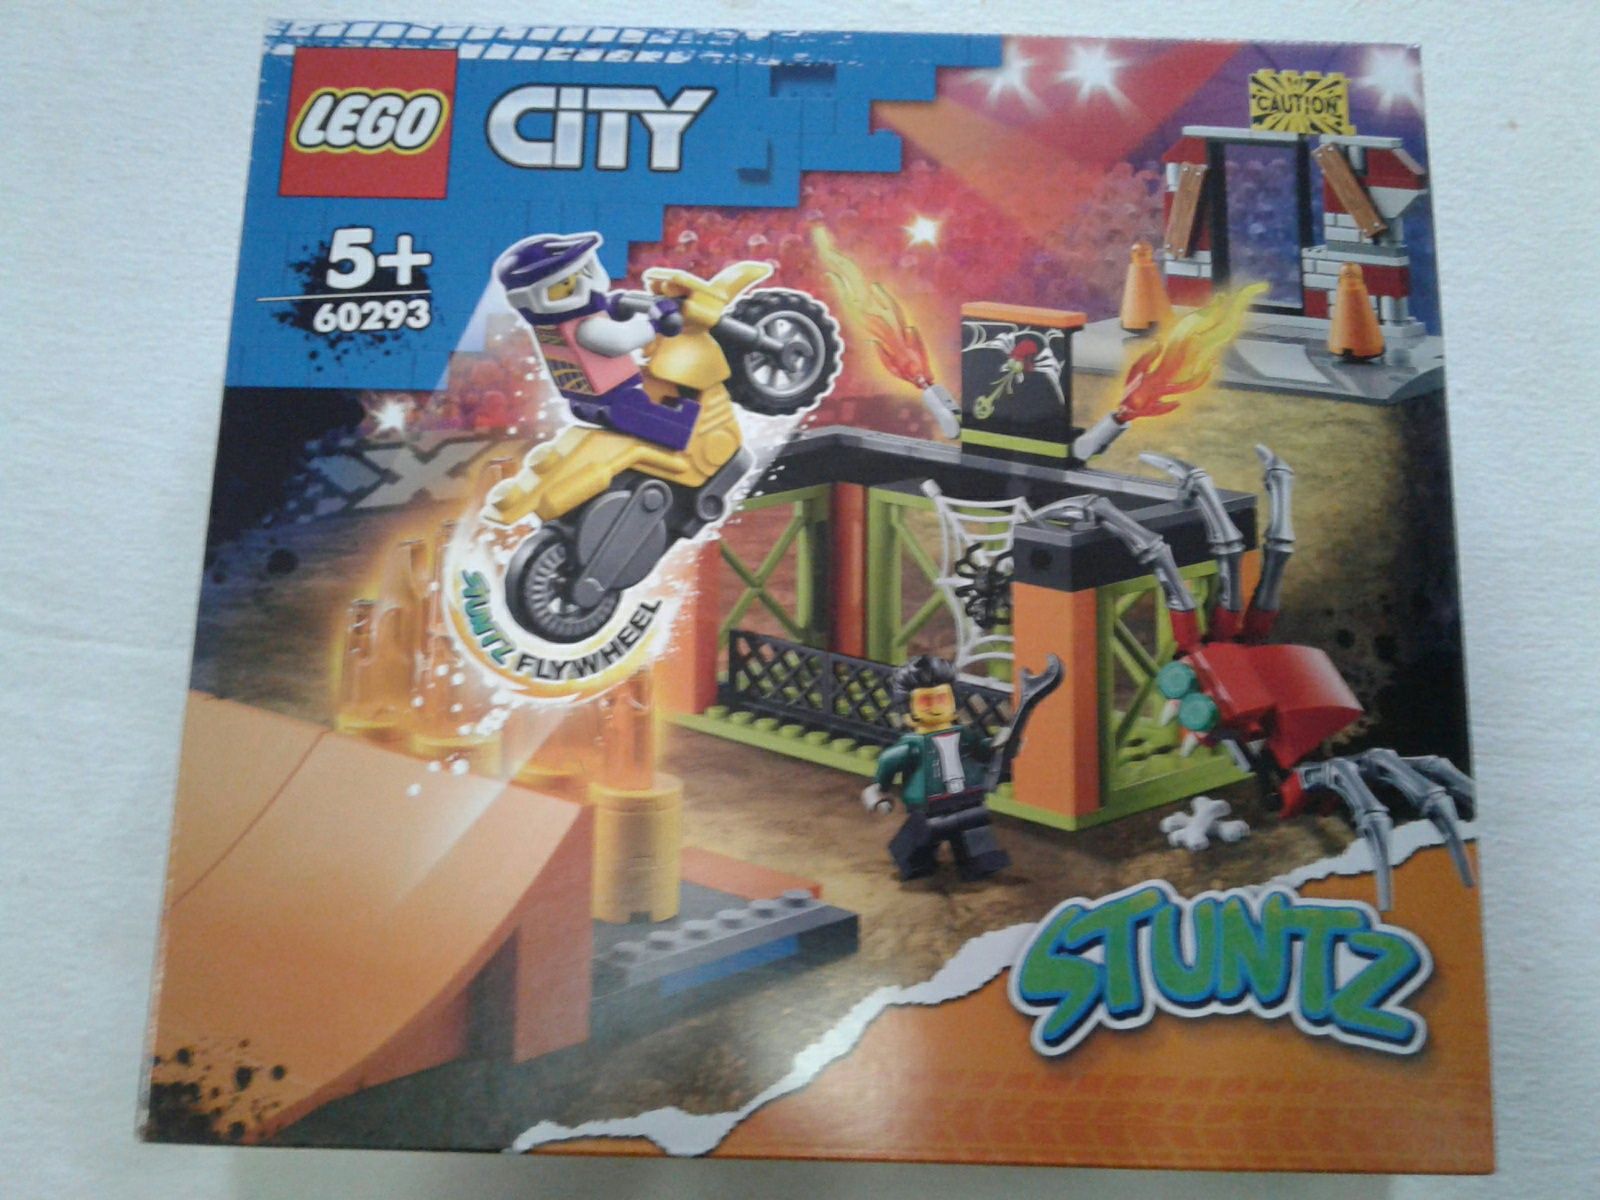 Parc de distractii si cascadorii Lego City 60293, nou, sigilat, rec.5+